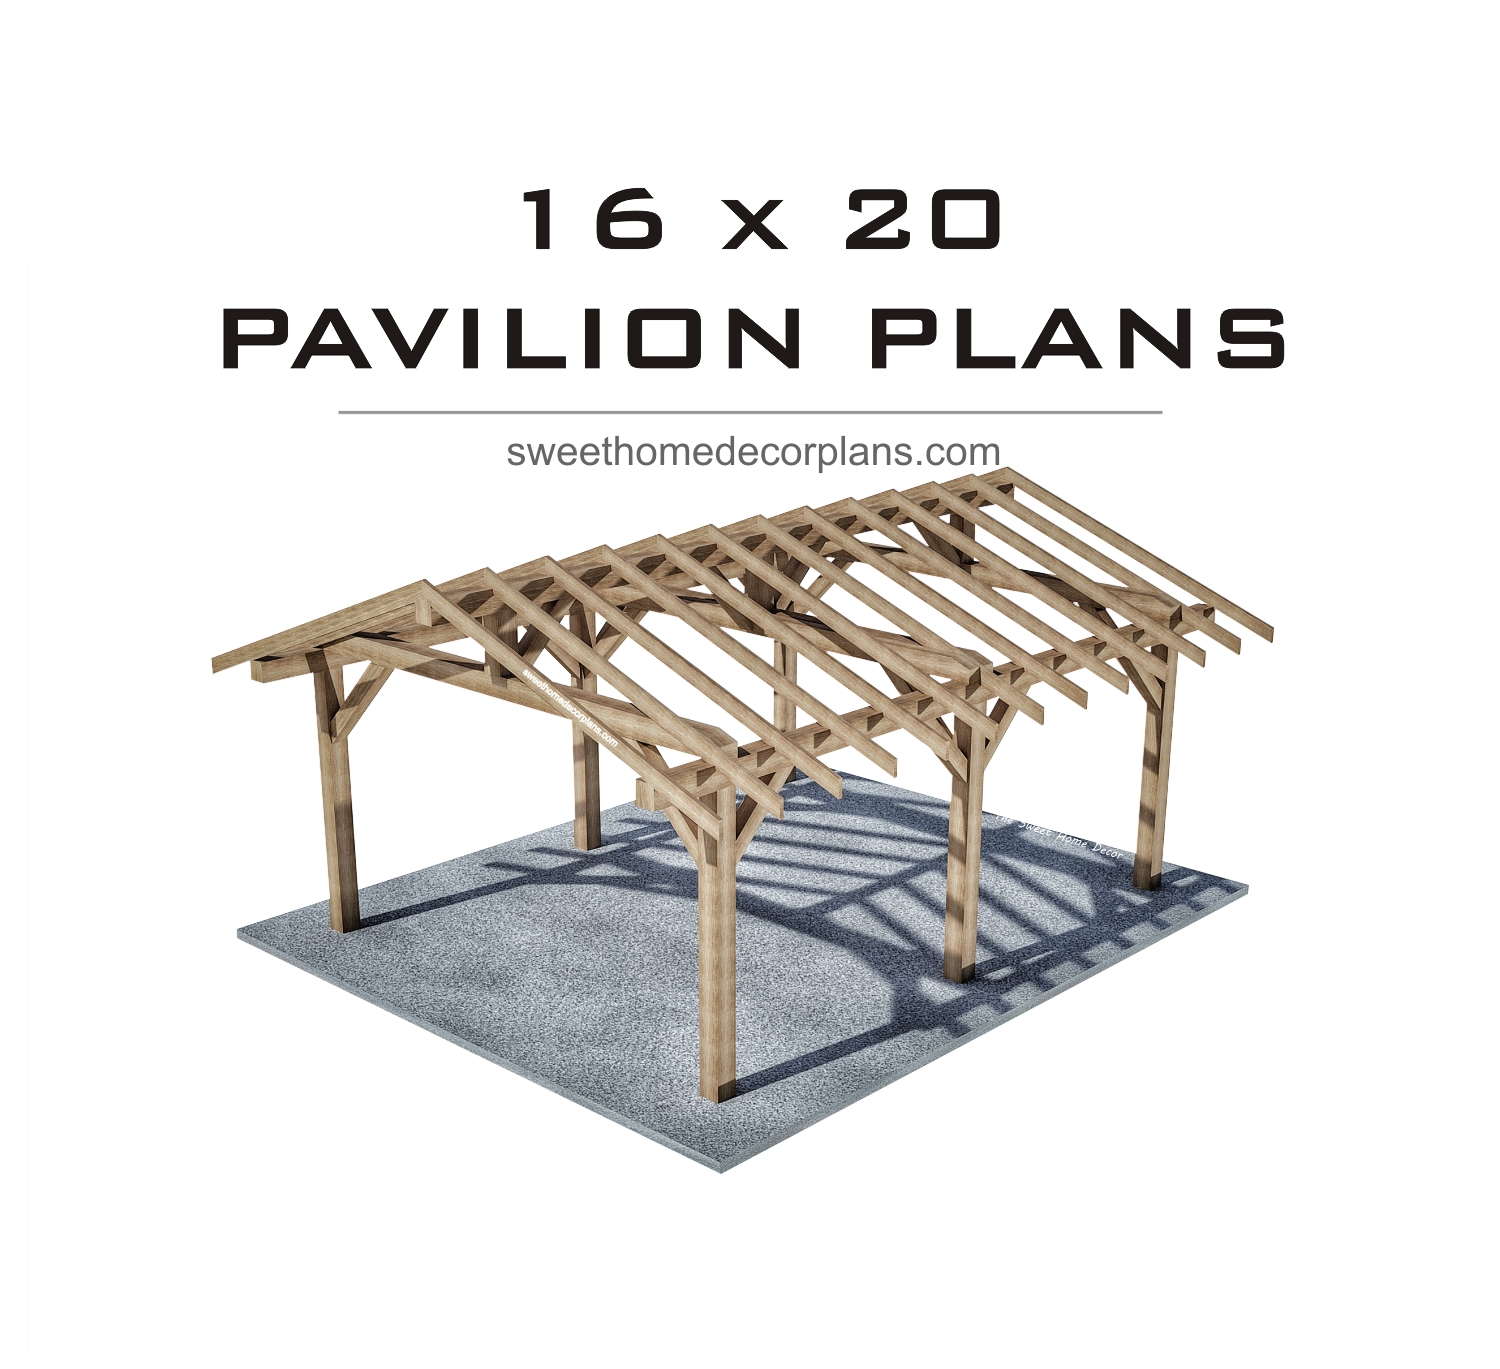 Timber-frame-wooden-16-х-20-gable-pavilion-plans-carport-gazebo-pergola-for-outdoor